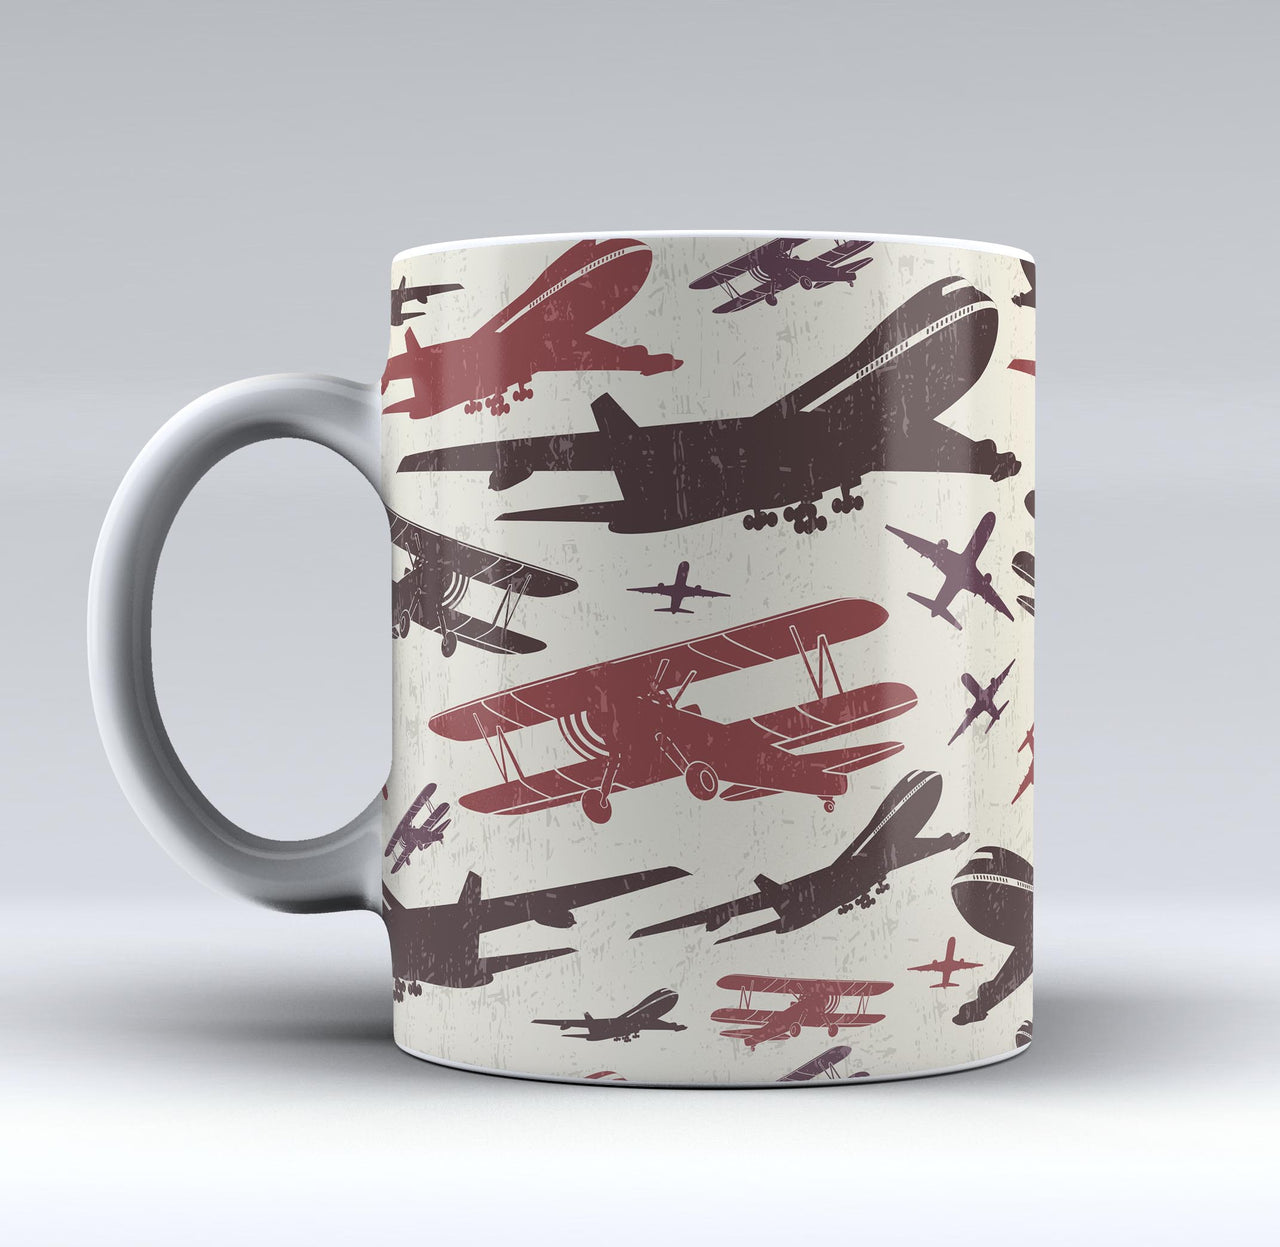 Vintage & Jumbo Airplanes Designed Mugs